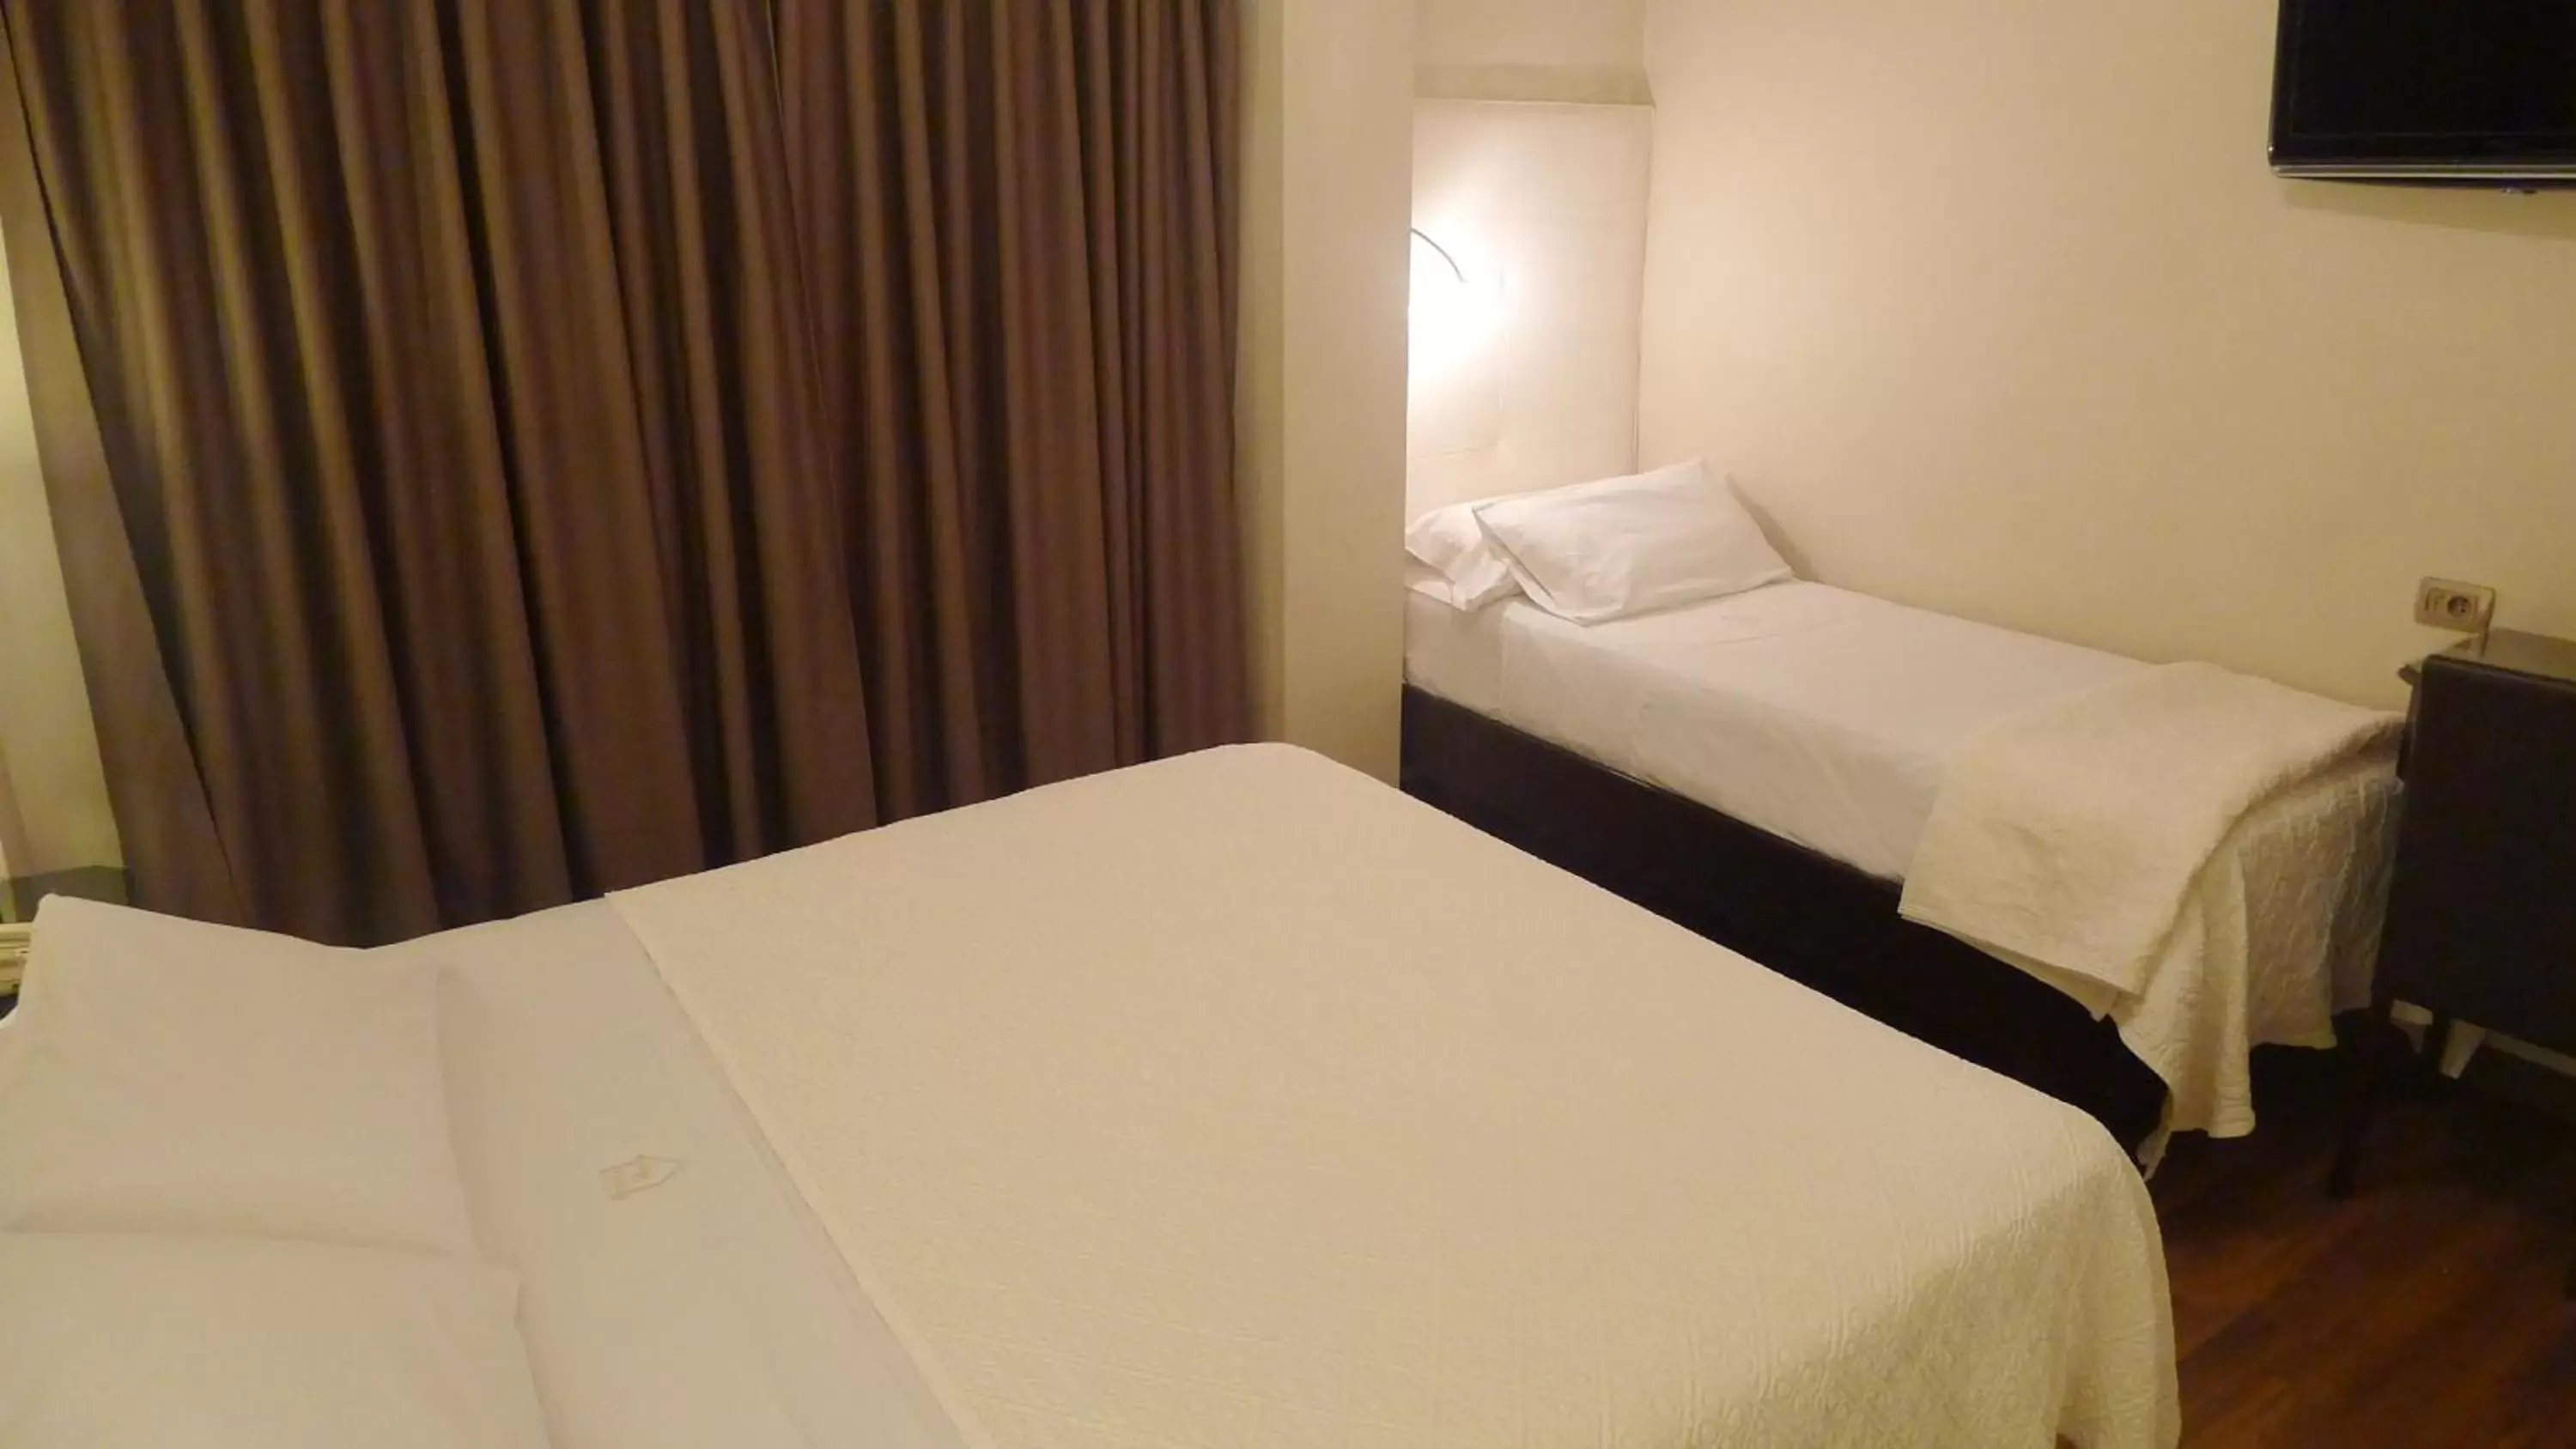 Standard Triple Room in Hotel Alvear